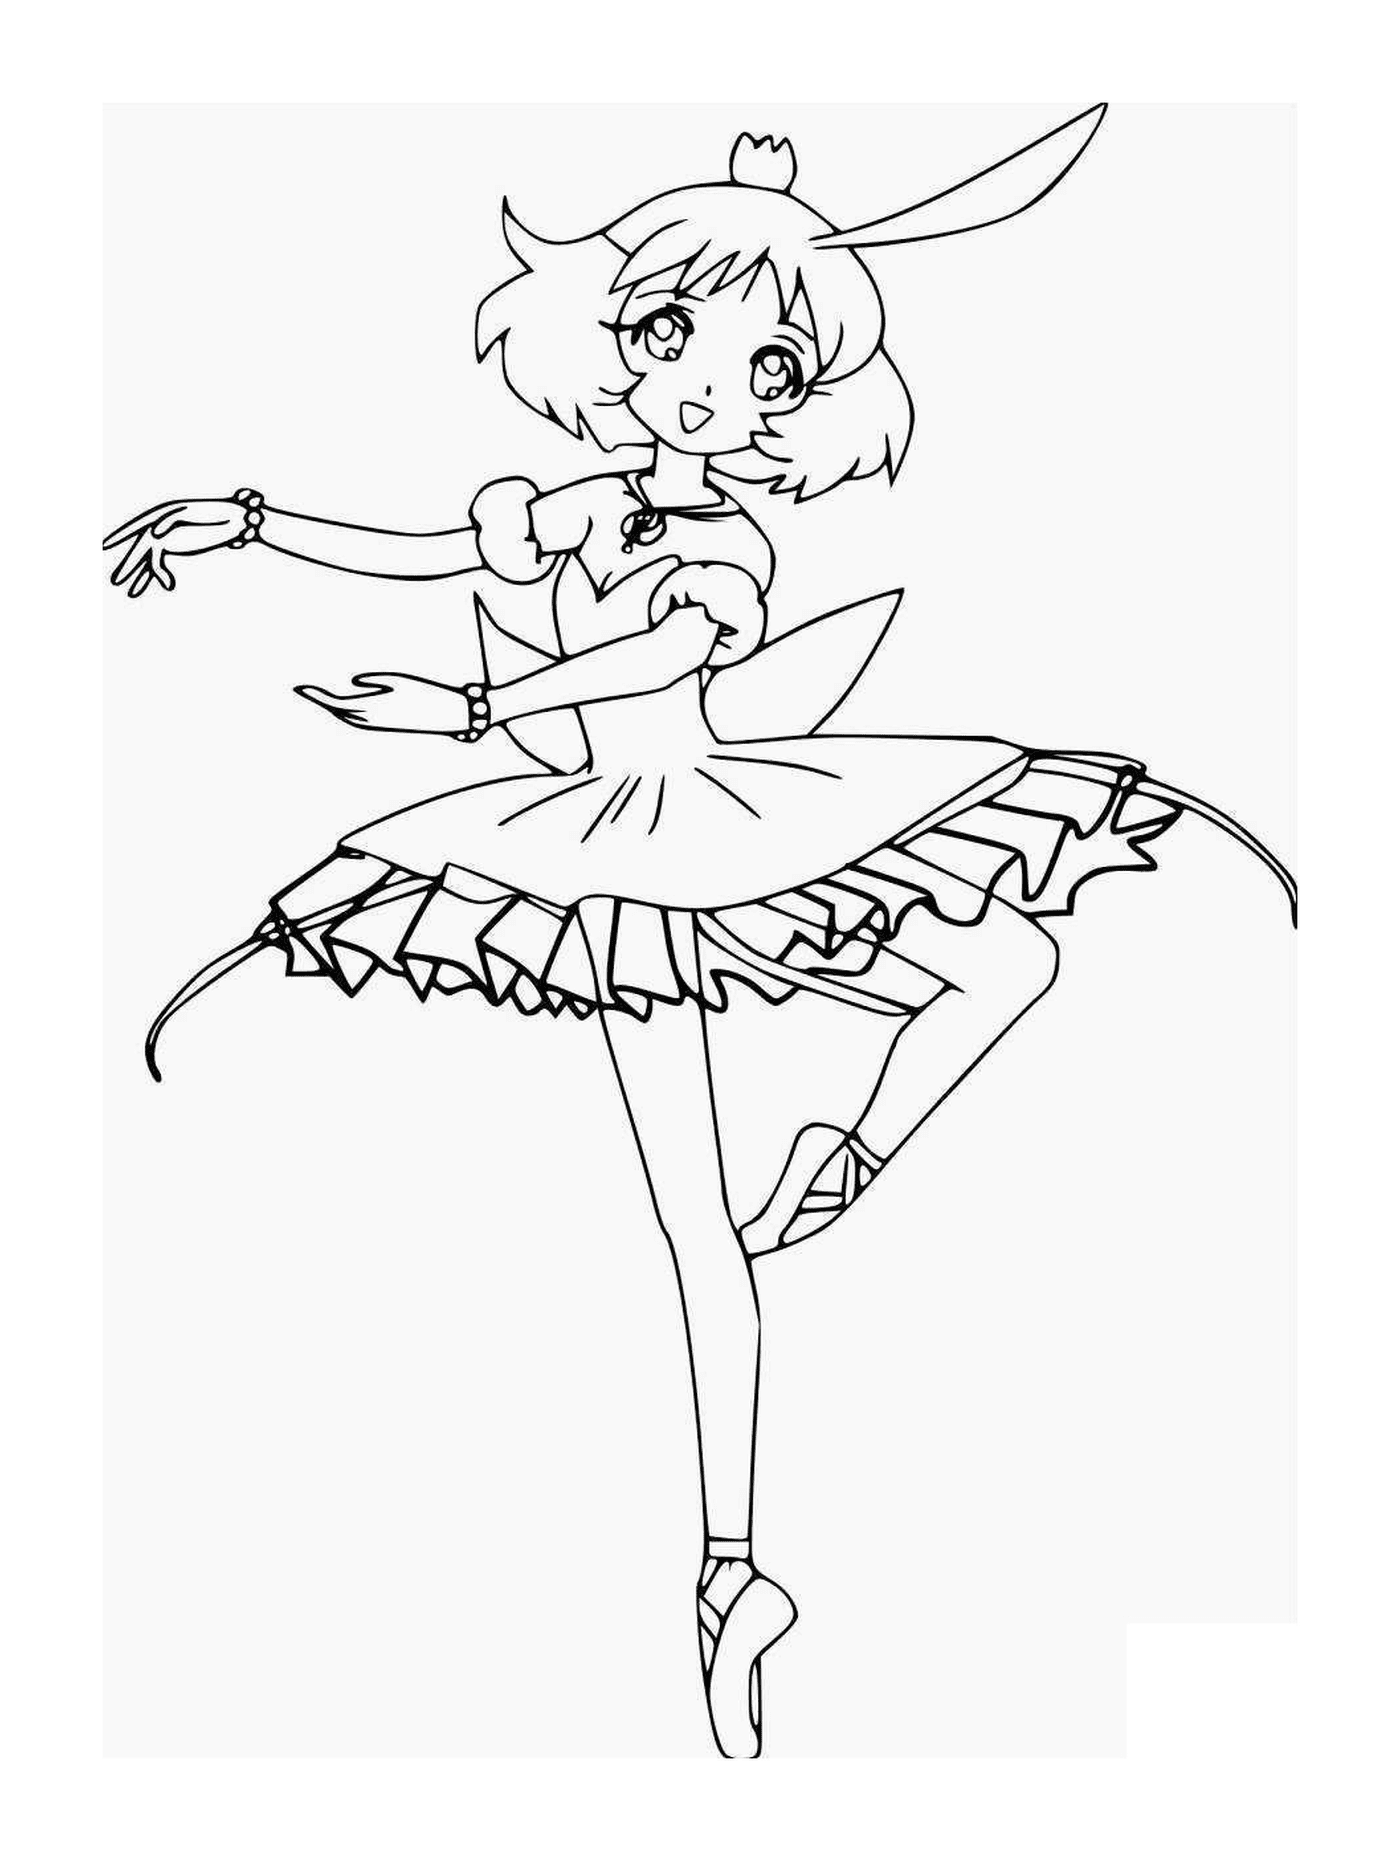  Manga Girl Dancer in Dress 